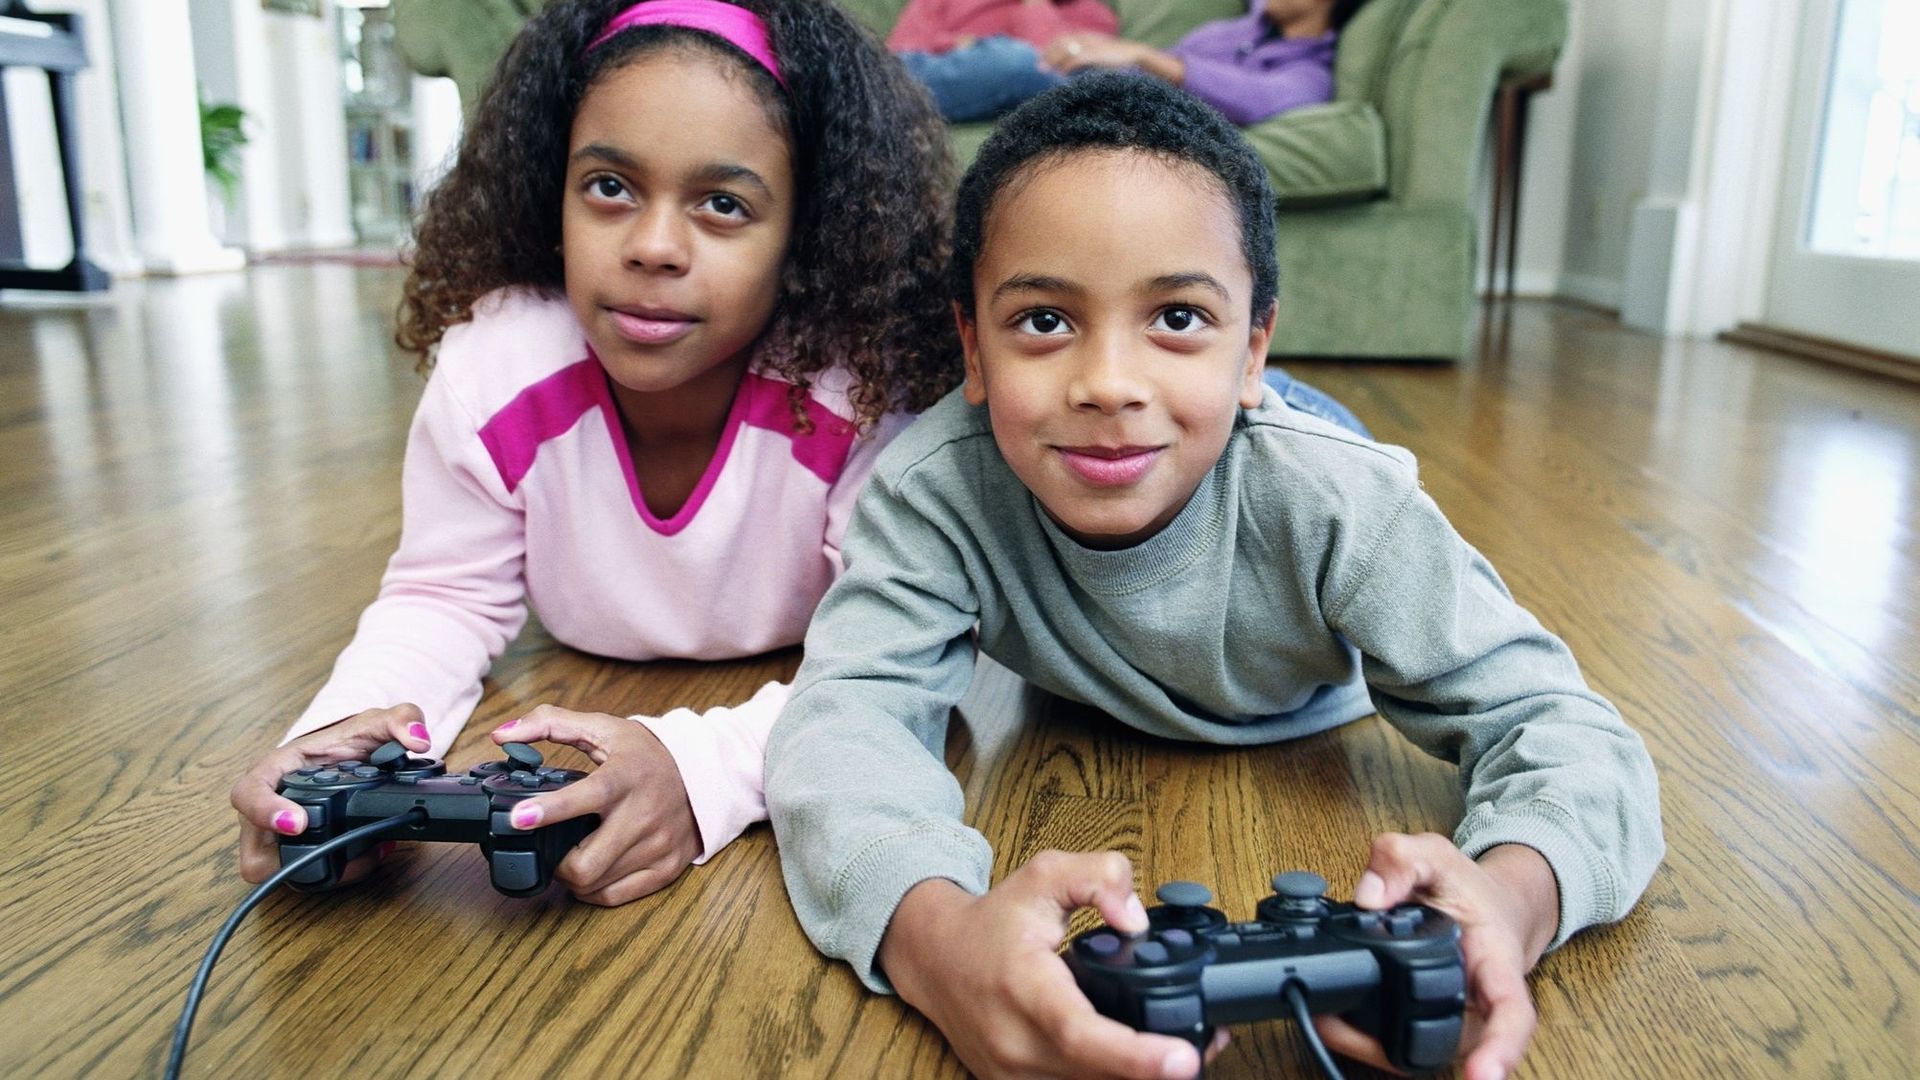 Les jeux vidéo aident à un meilleur développement des enfants, selon une étude.